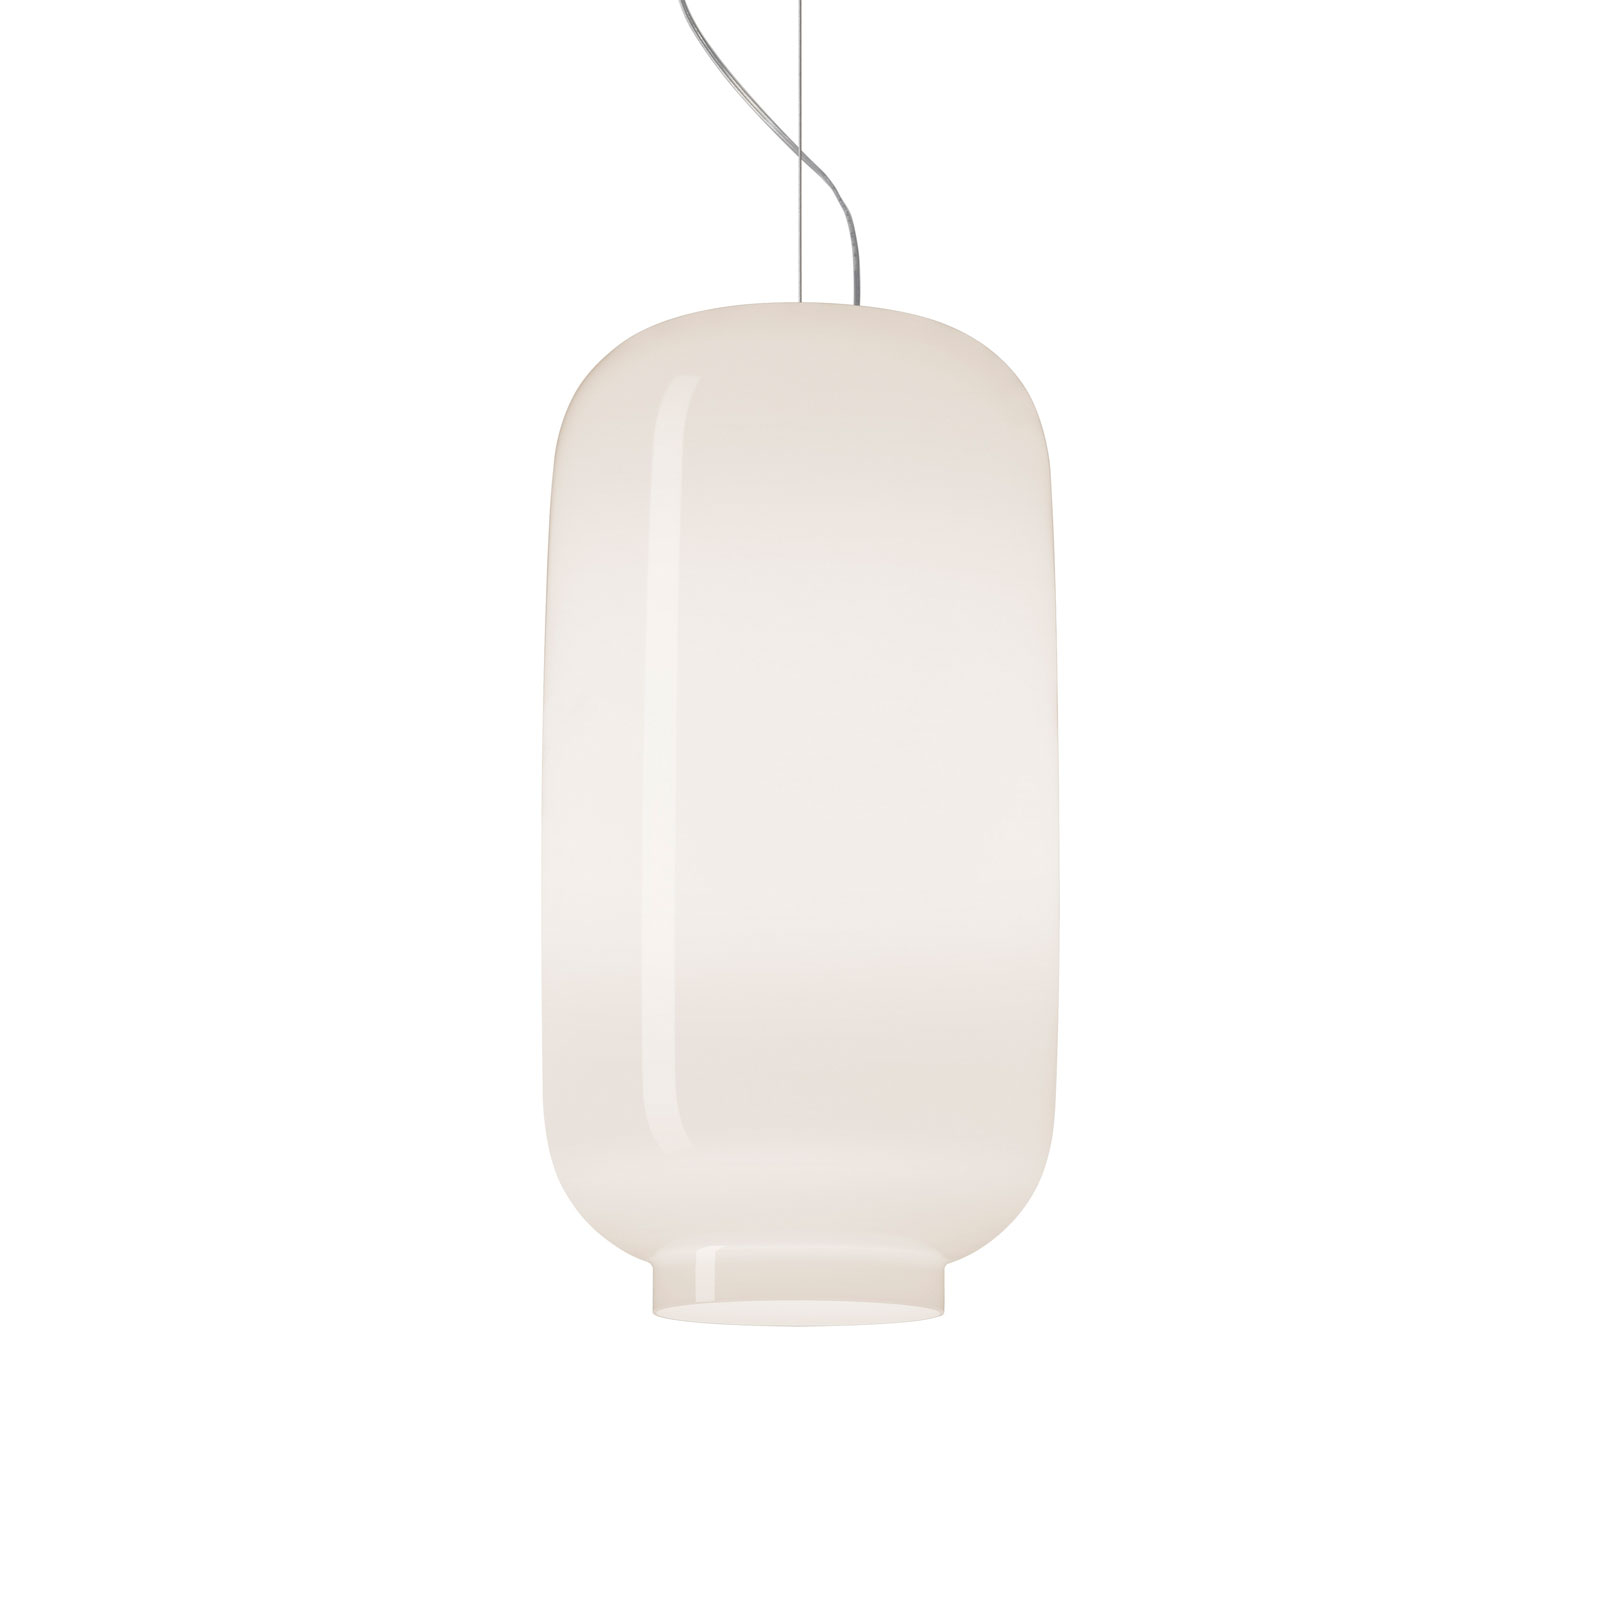 Foscarini Chouchin Bianco 2 LED závěsná lampa zapnuto/vypnuto